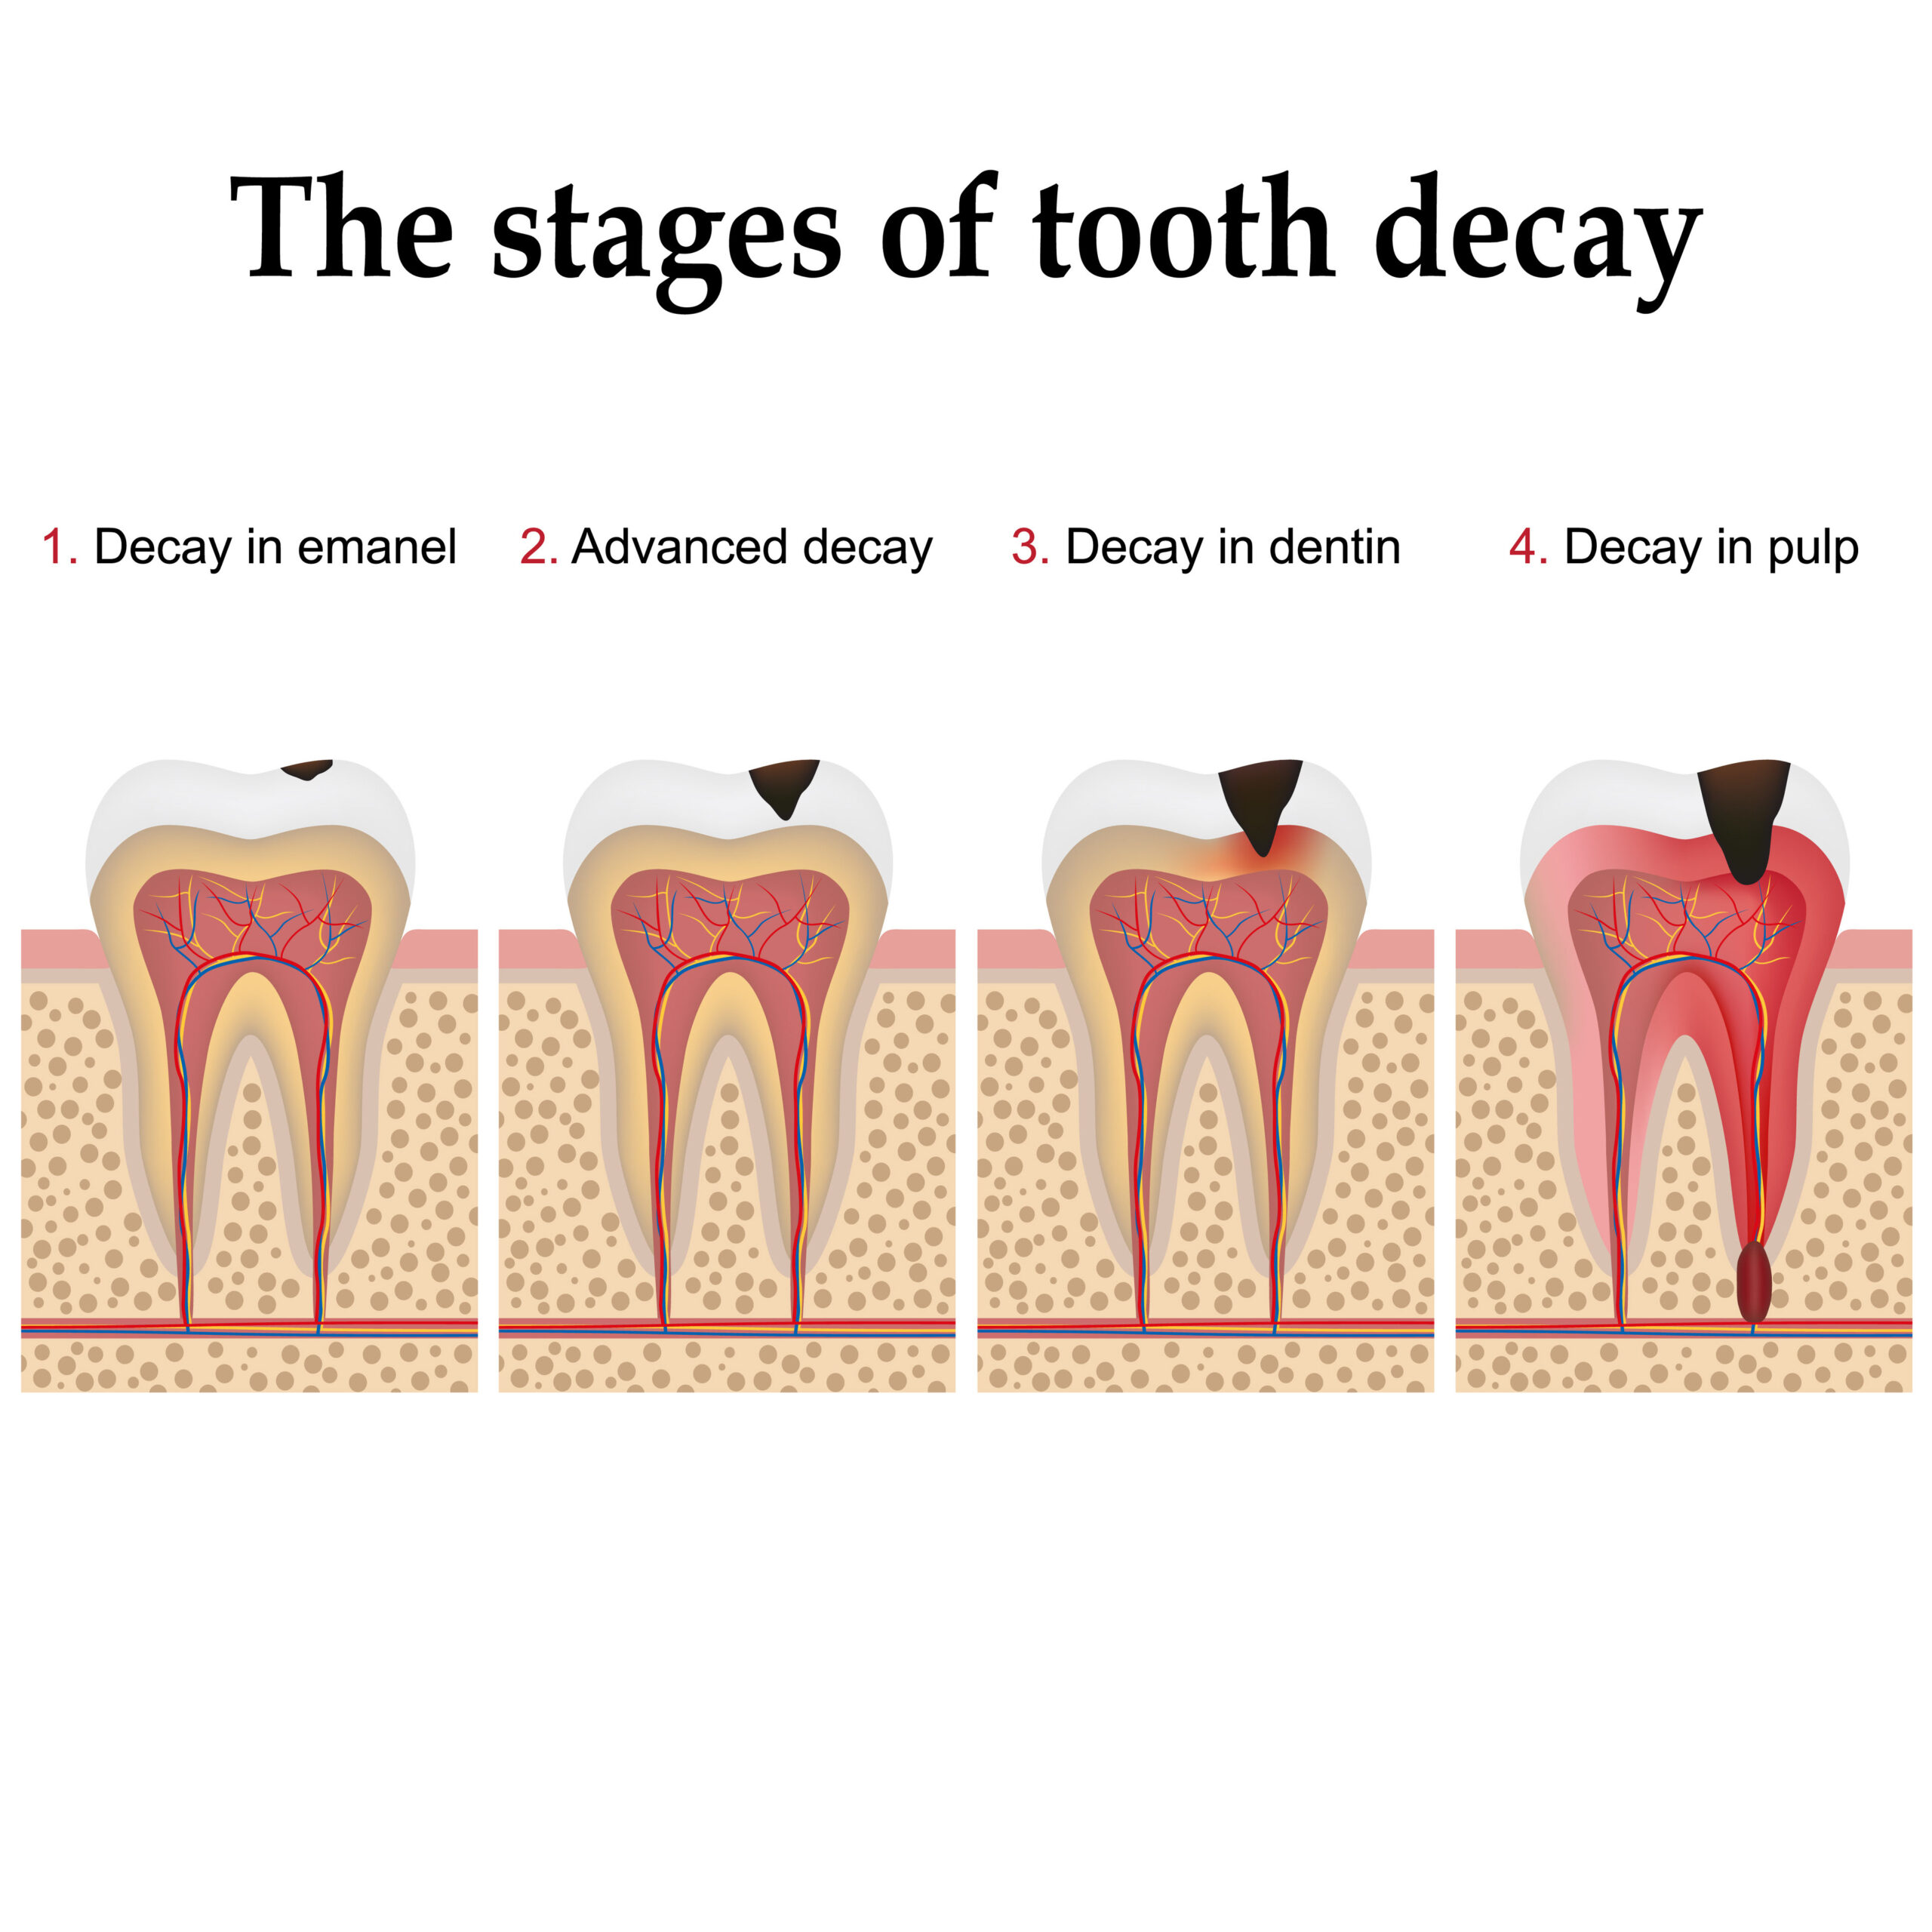 Imagen de la formación de la caries dental paso a paso, formando placa dental y finalmente caries y cavidad.